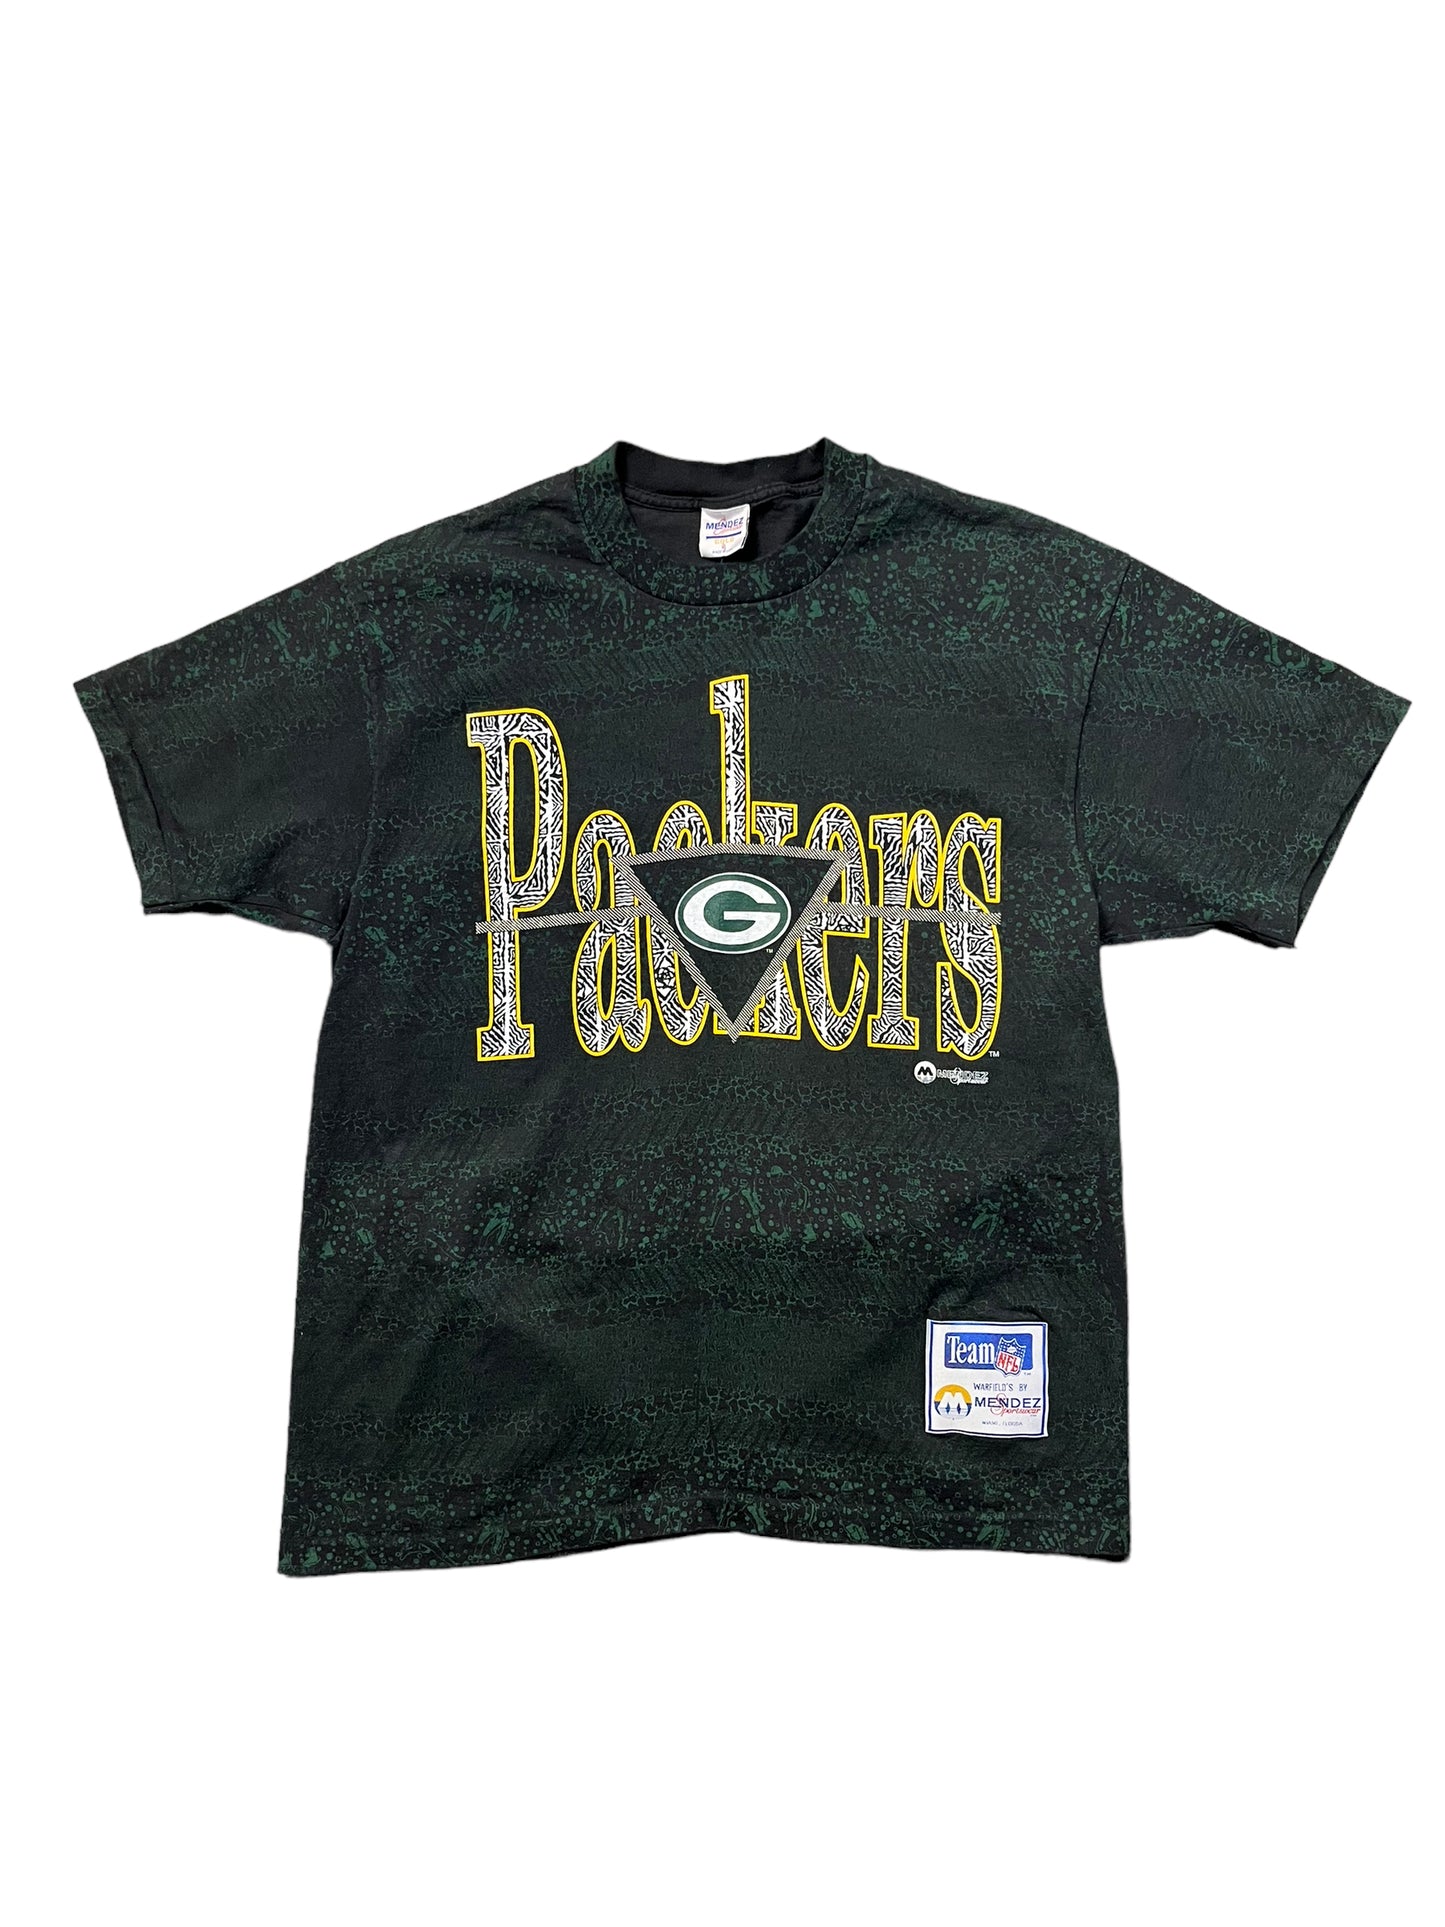 (XL) Vintage Greenbay Packers Tee